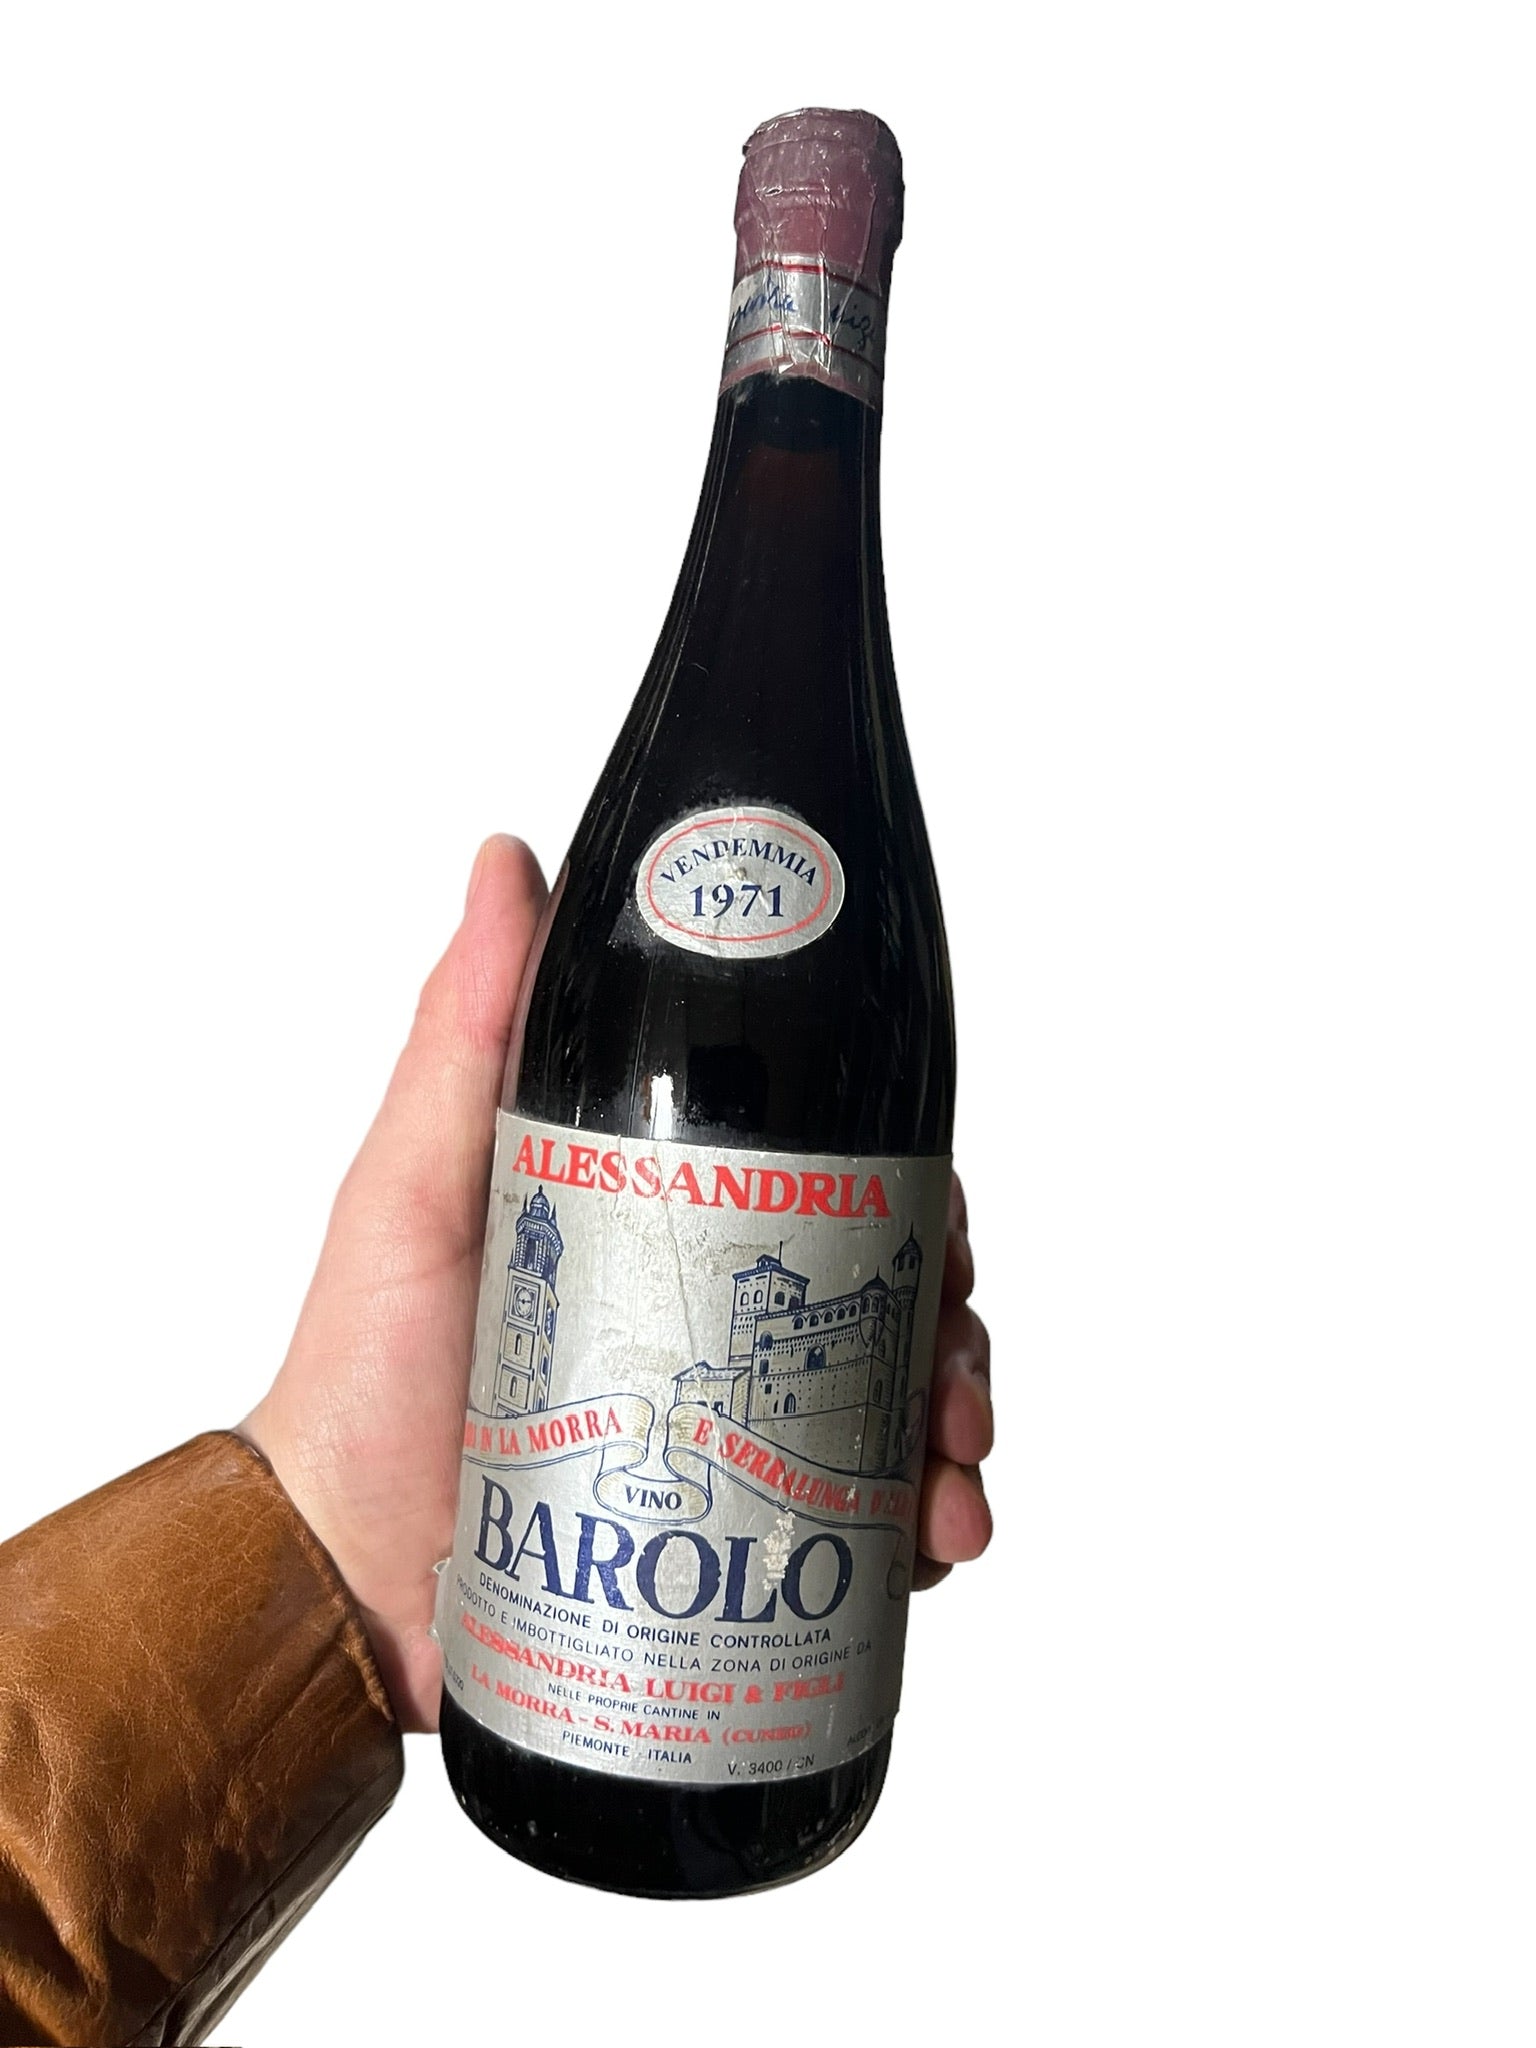 Se Barolo Alessandria 1971 hos Bottleswithhistory.dk